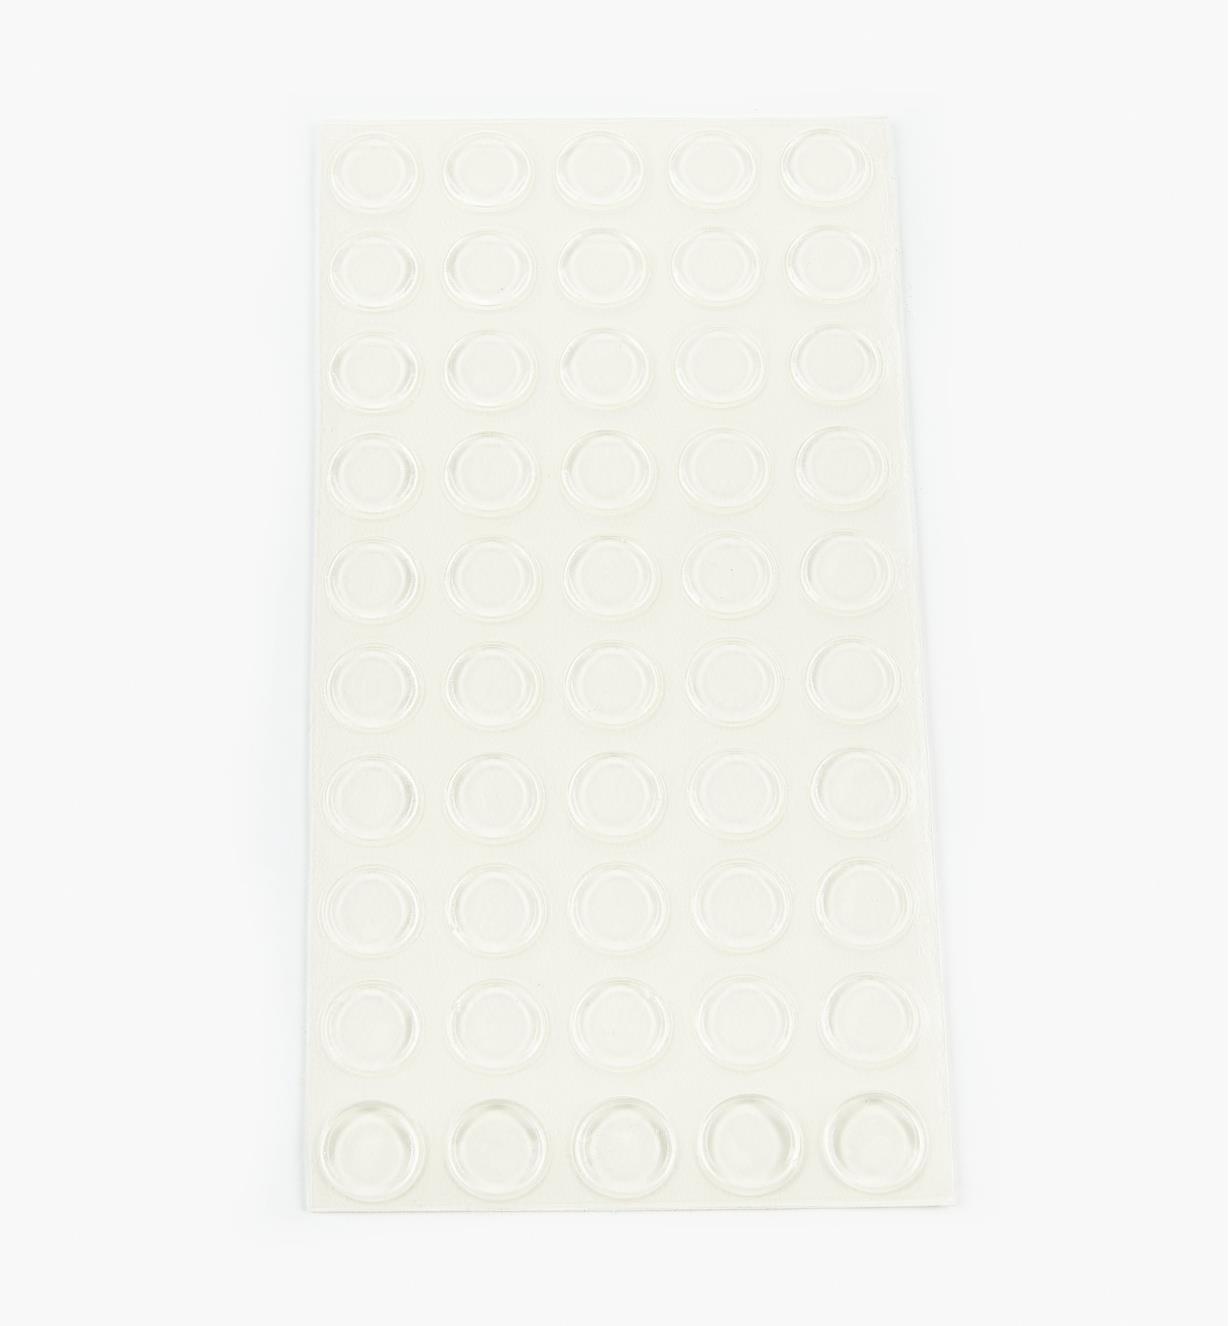 00S2005 - Amortisseurs plats et ronds de 12,7 mm x 1,5 mm, le paquet de 50